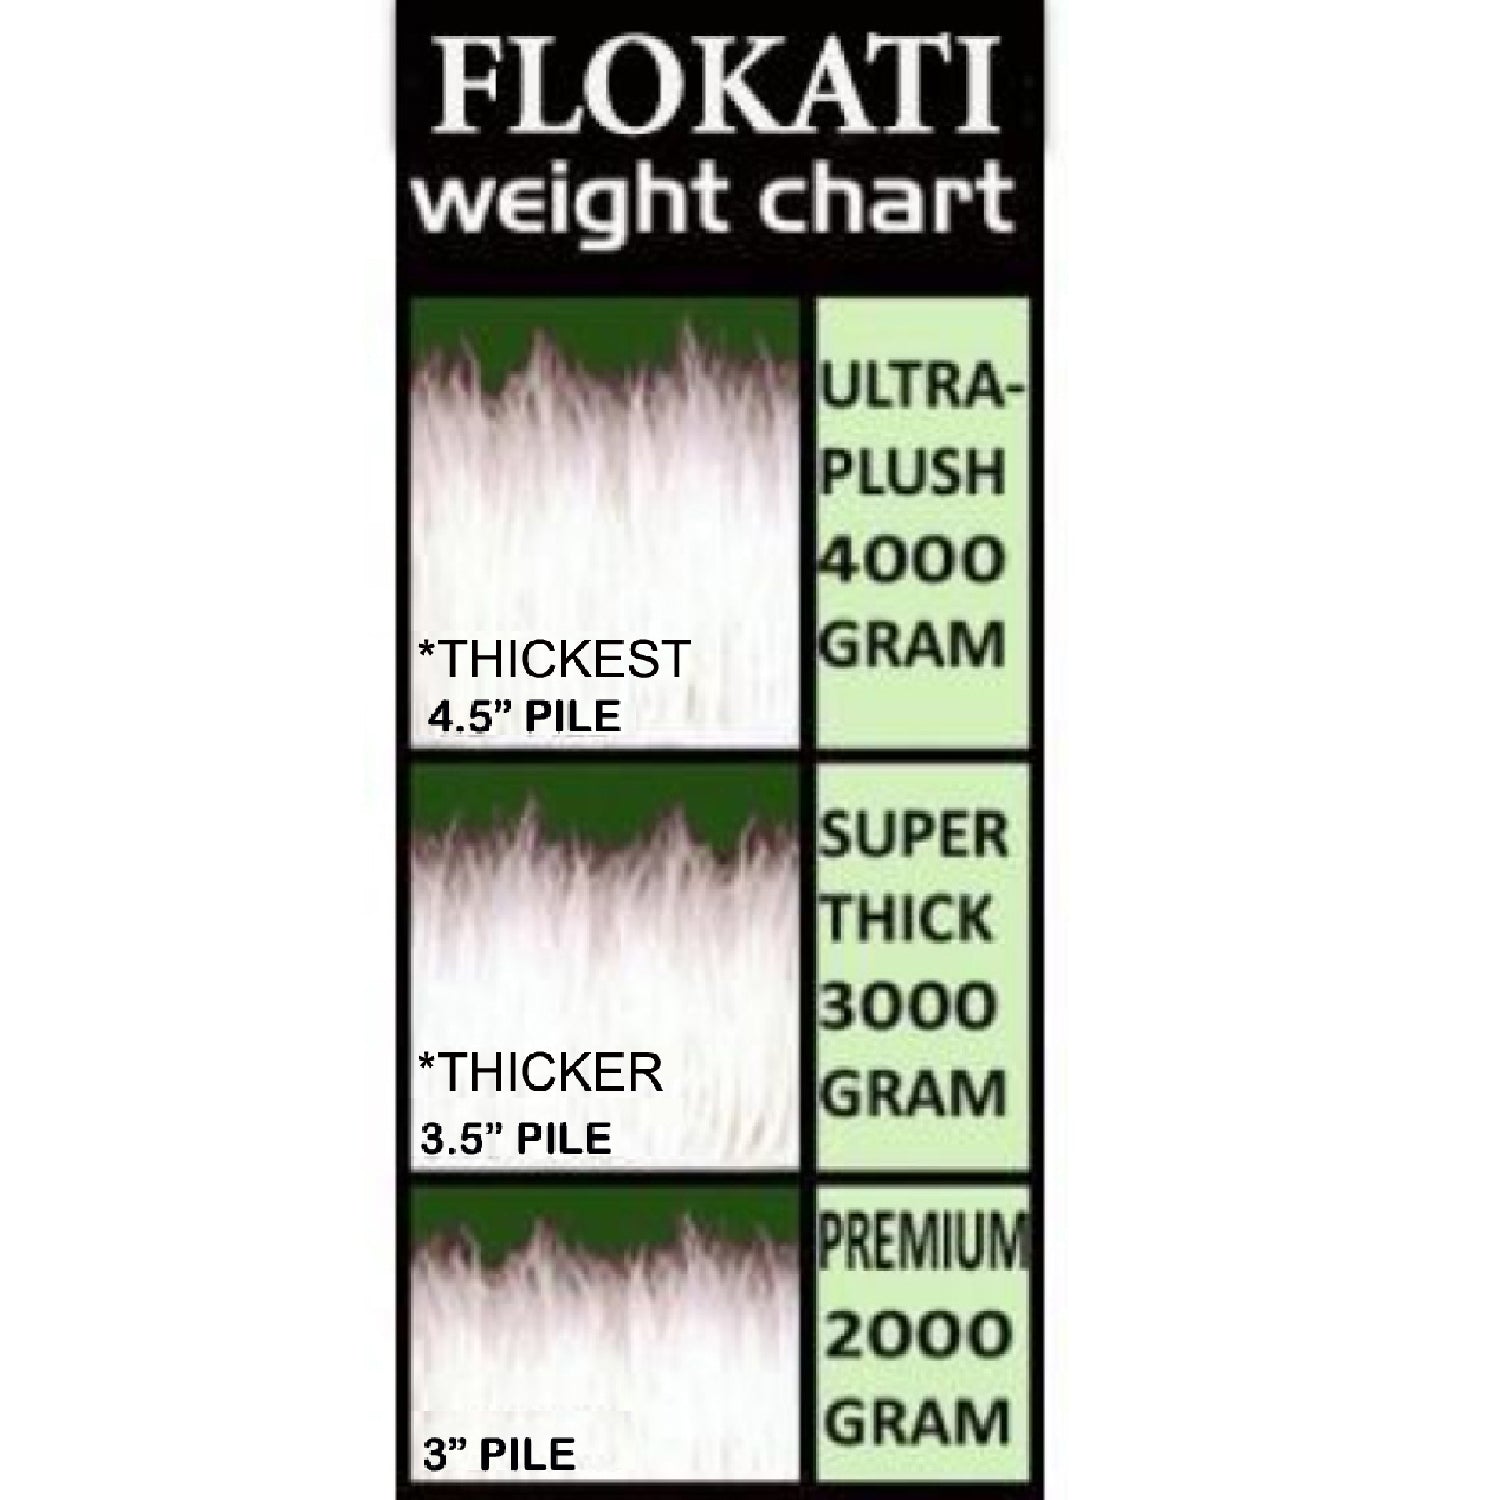 CLASSIC FLOKATI SHAG RUGS | PREMIUM 3” WOOL PILE | 2000 GRAM WEIGHT